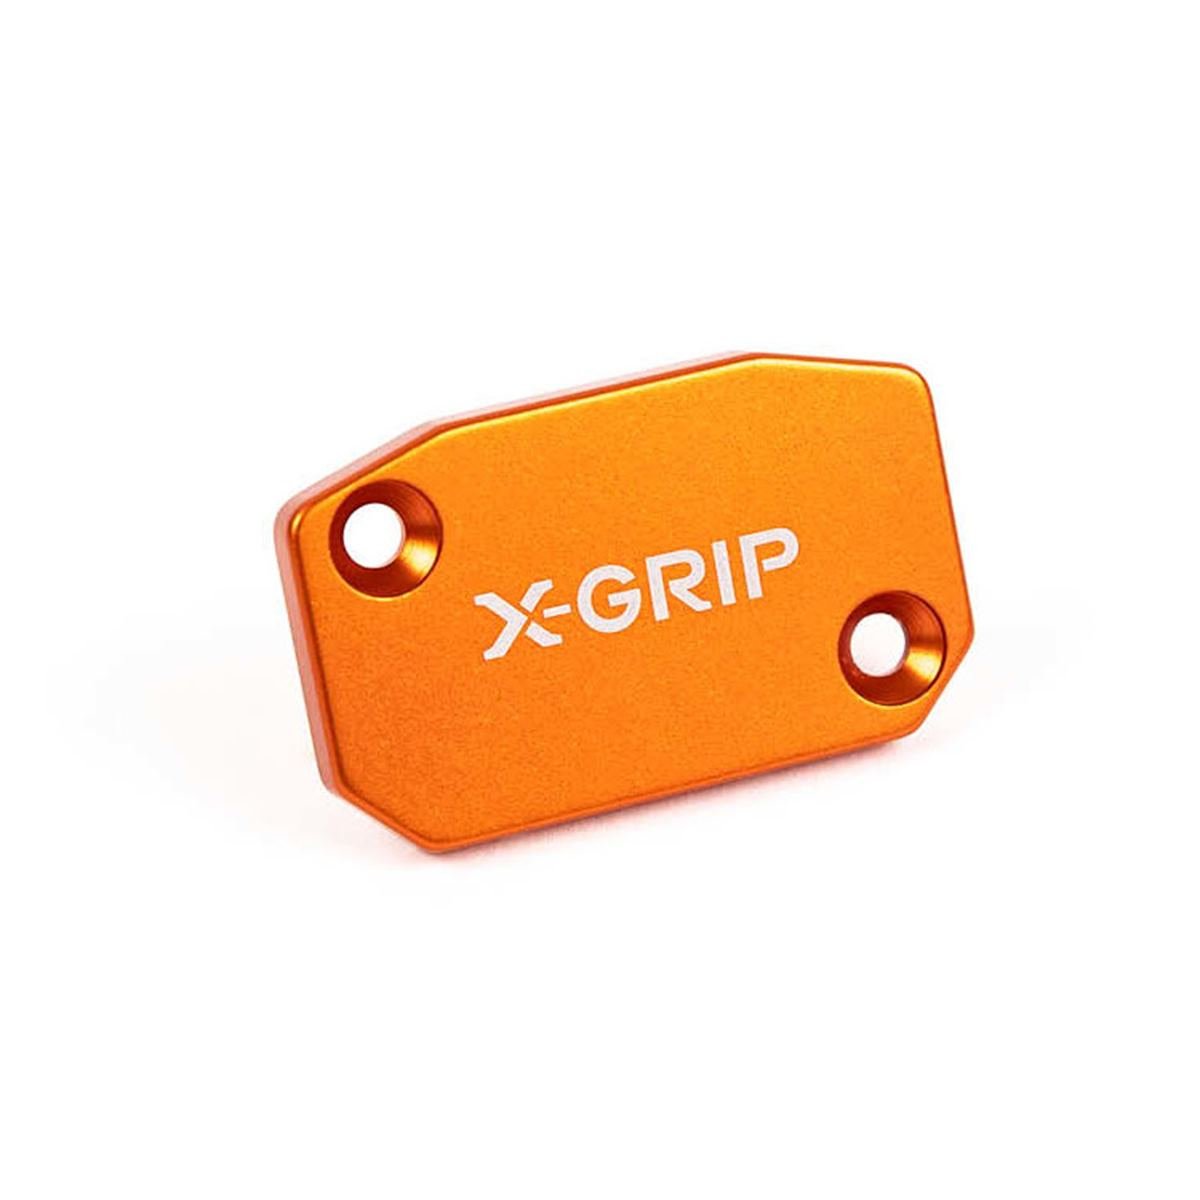 X-Grip Brems-Kupplungsarmaturendeckel Brembo